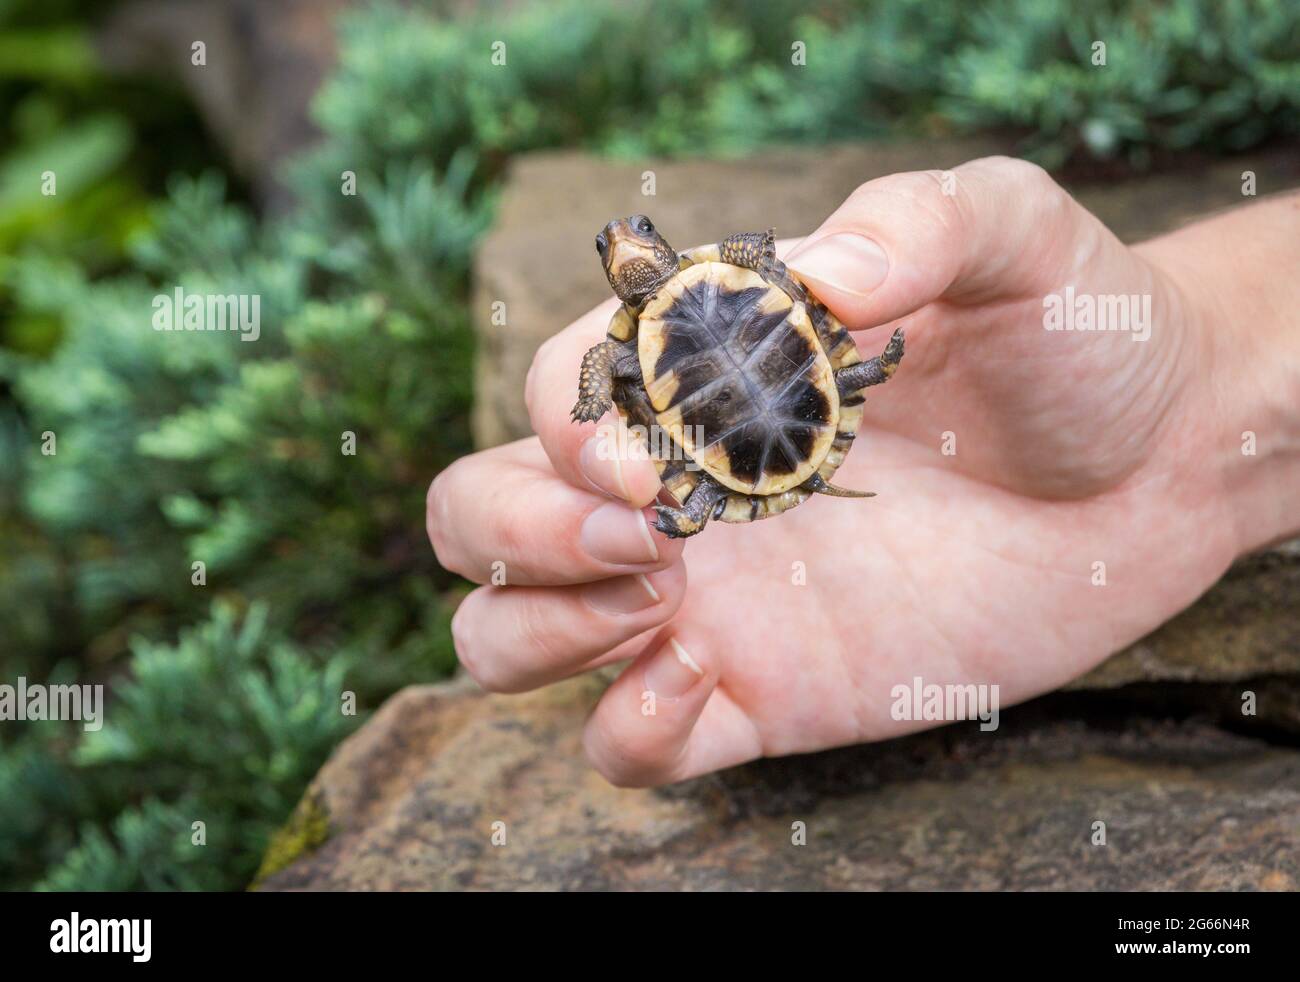 Kleine Baby Waldkastenschildkröte (Terrapene carolina) in einer Person Hand über einigen Felsen gehalten Stockfoto